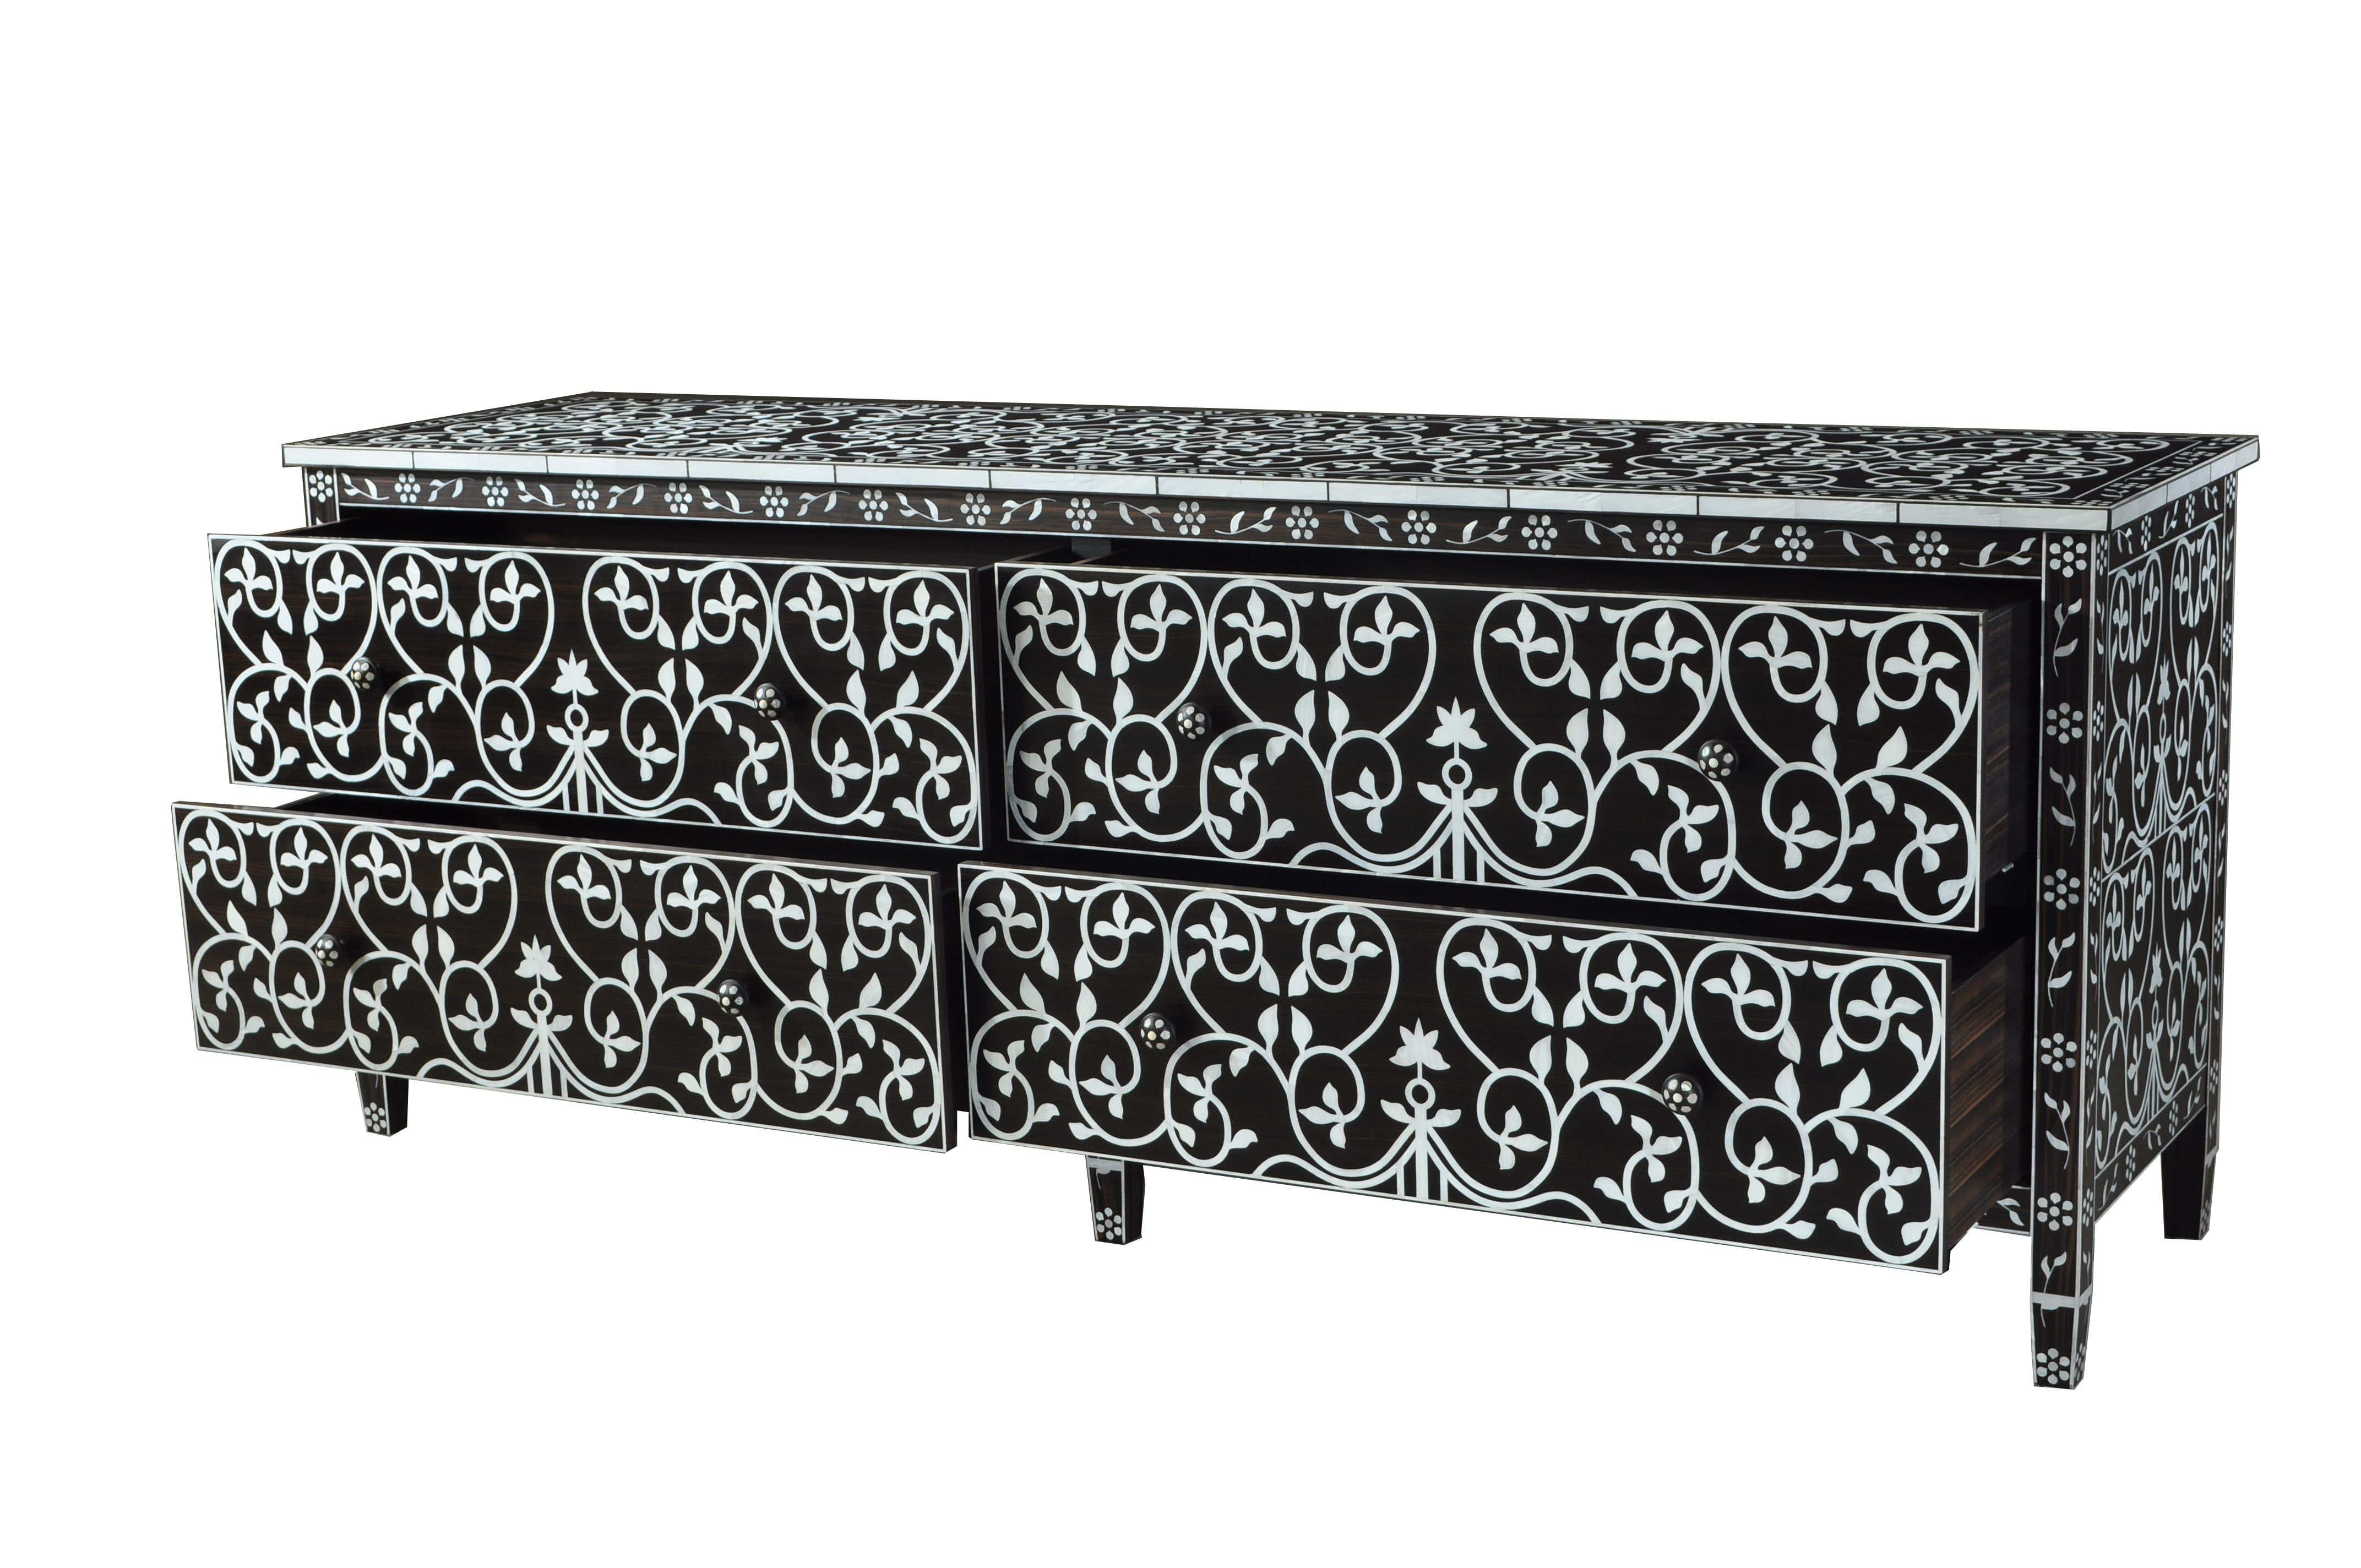 Cabinets & Sideboards - AKBIK Furniture & Design